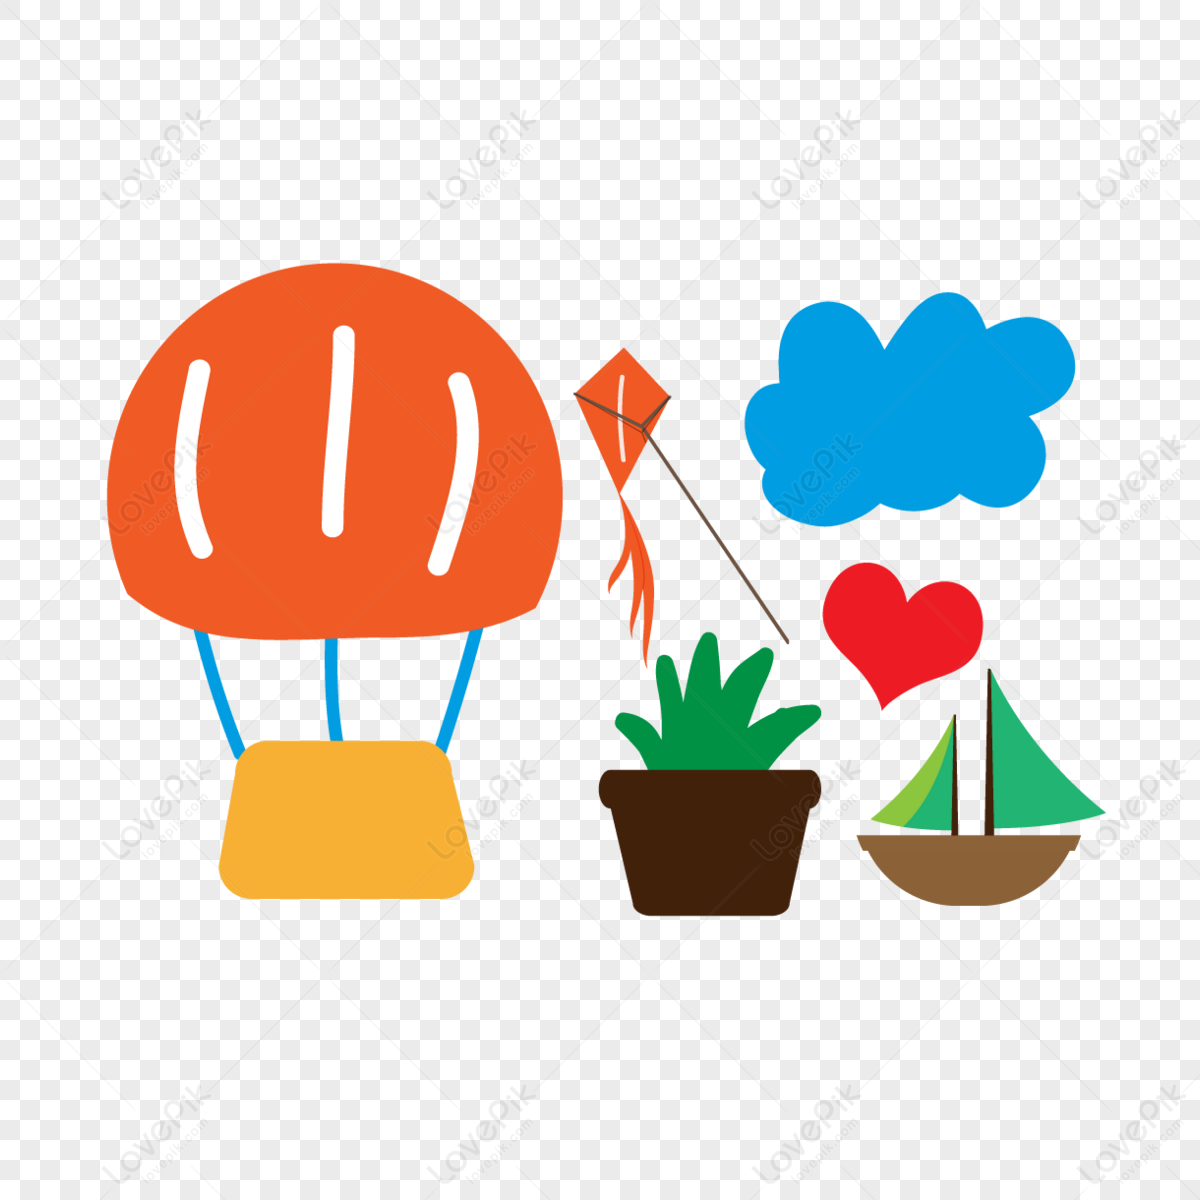 svg cartoon hot air balloon love sailboat cloud flower element,flower balloons,flowers png image